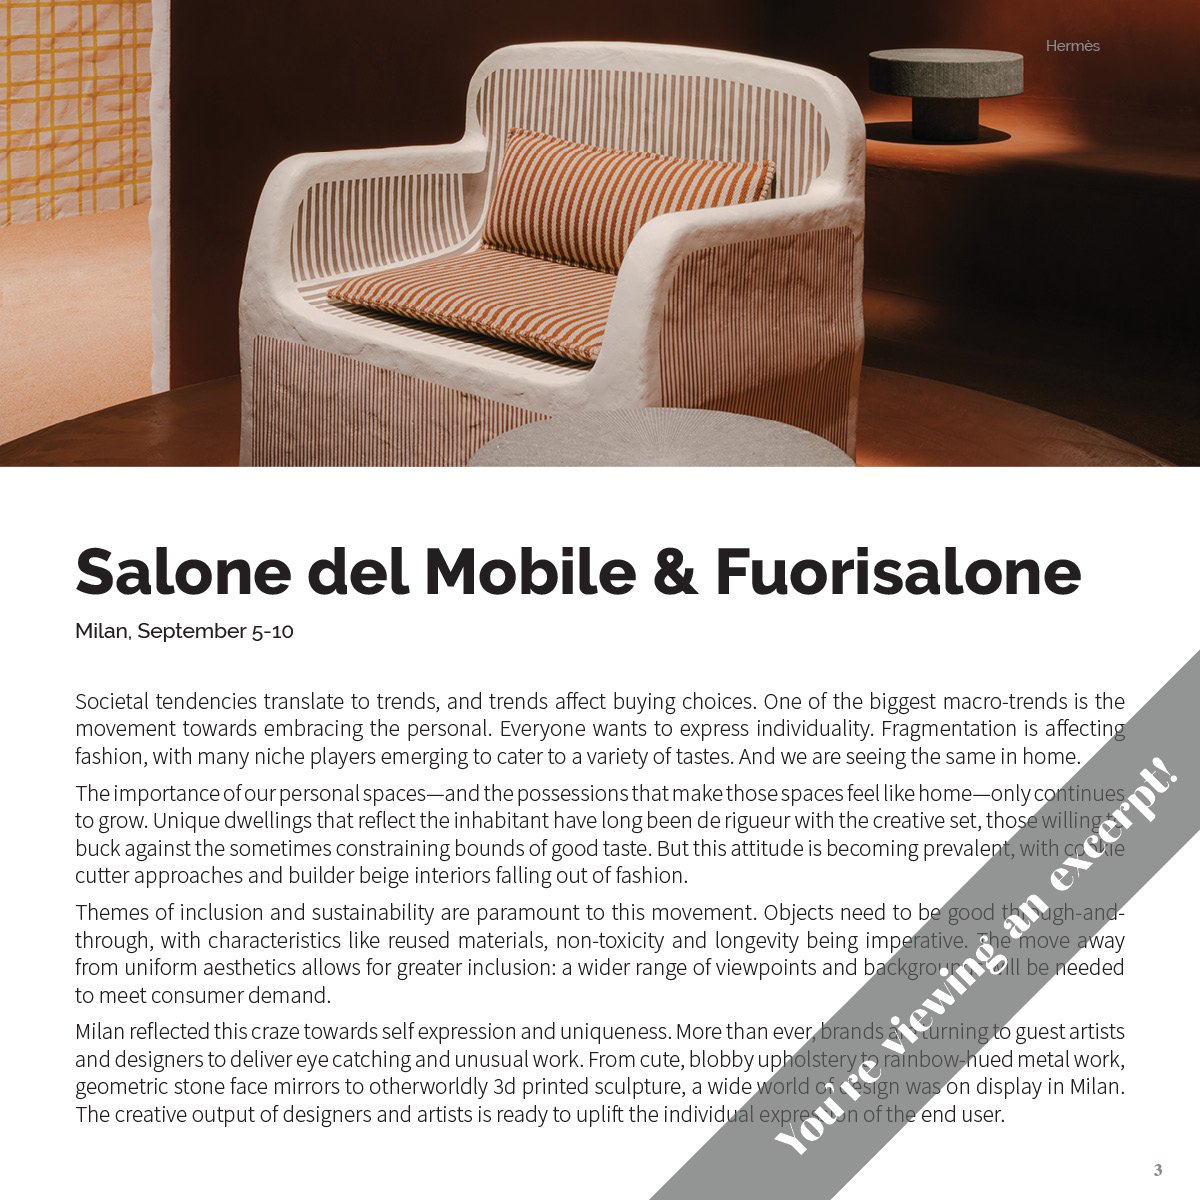 milan design week 2021: salone del mobile postponed until september